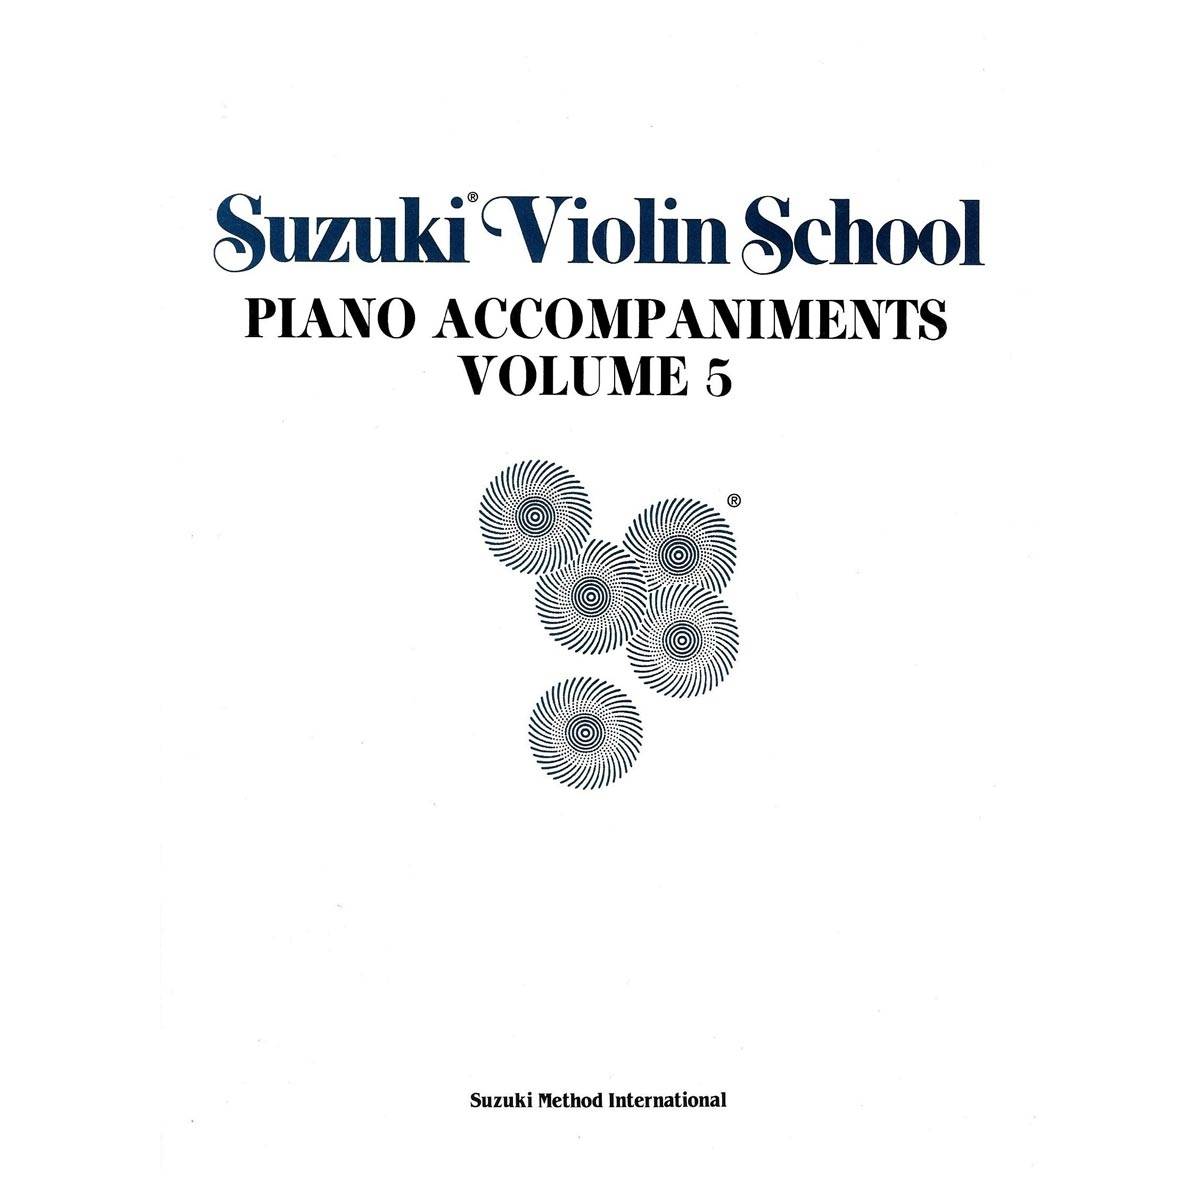 Suzuki - Violin School Vol.5 Piano Accompaniments